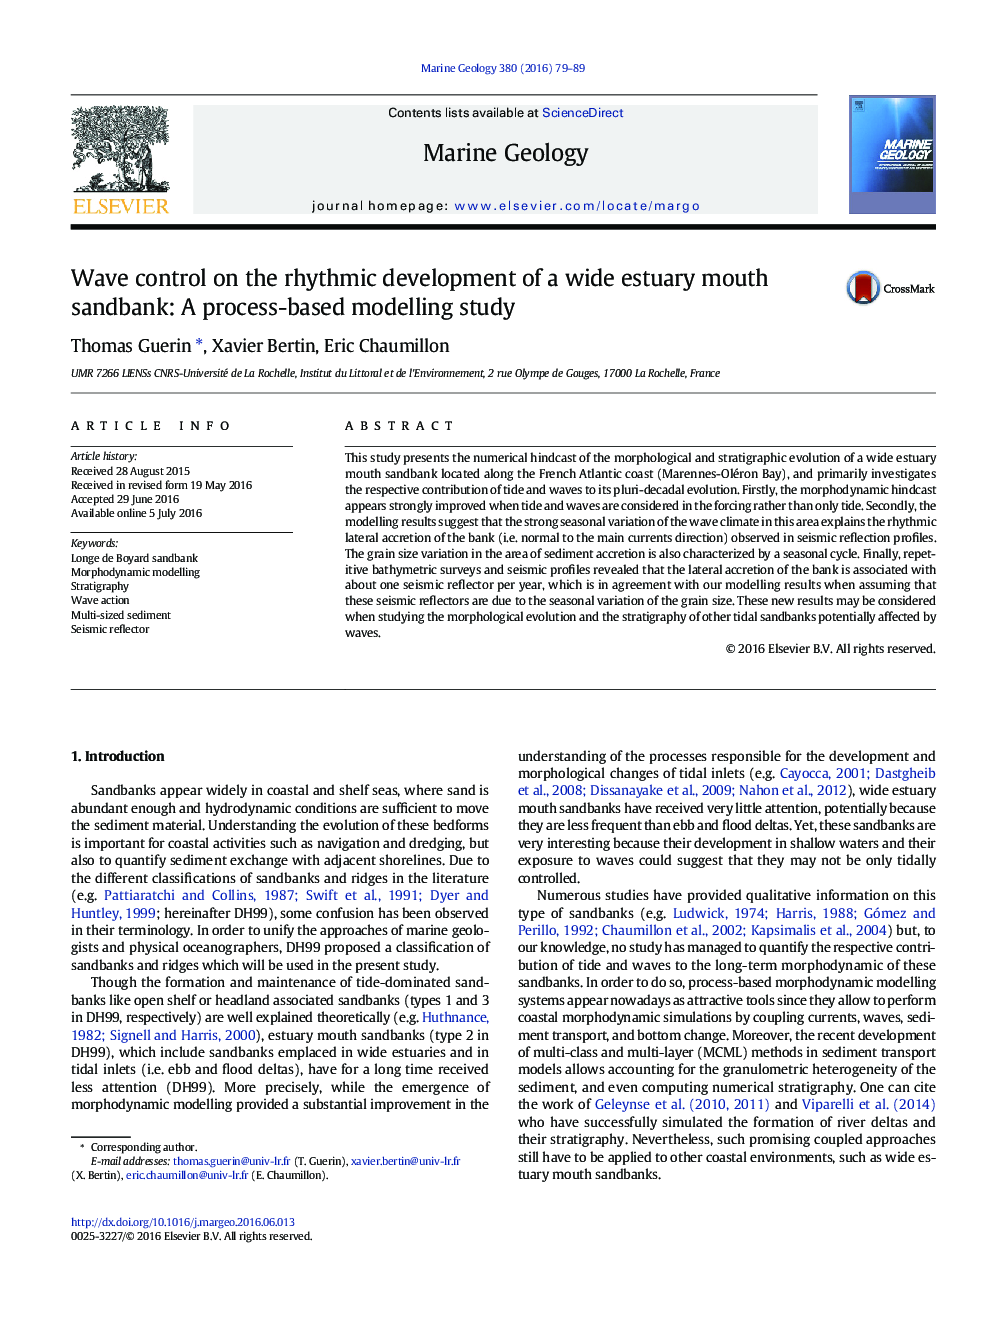 کنترل موج در توسعه ریتمیک شن و ماسه شن و ماسه دهانه وسیع: یک مطالعه مدل سازی مبتنی بر فرایند 